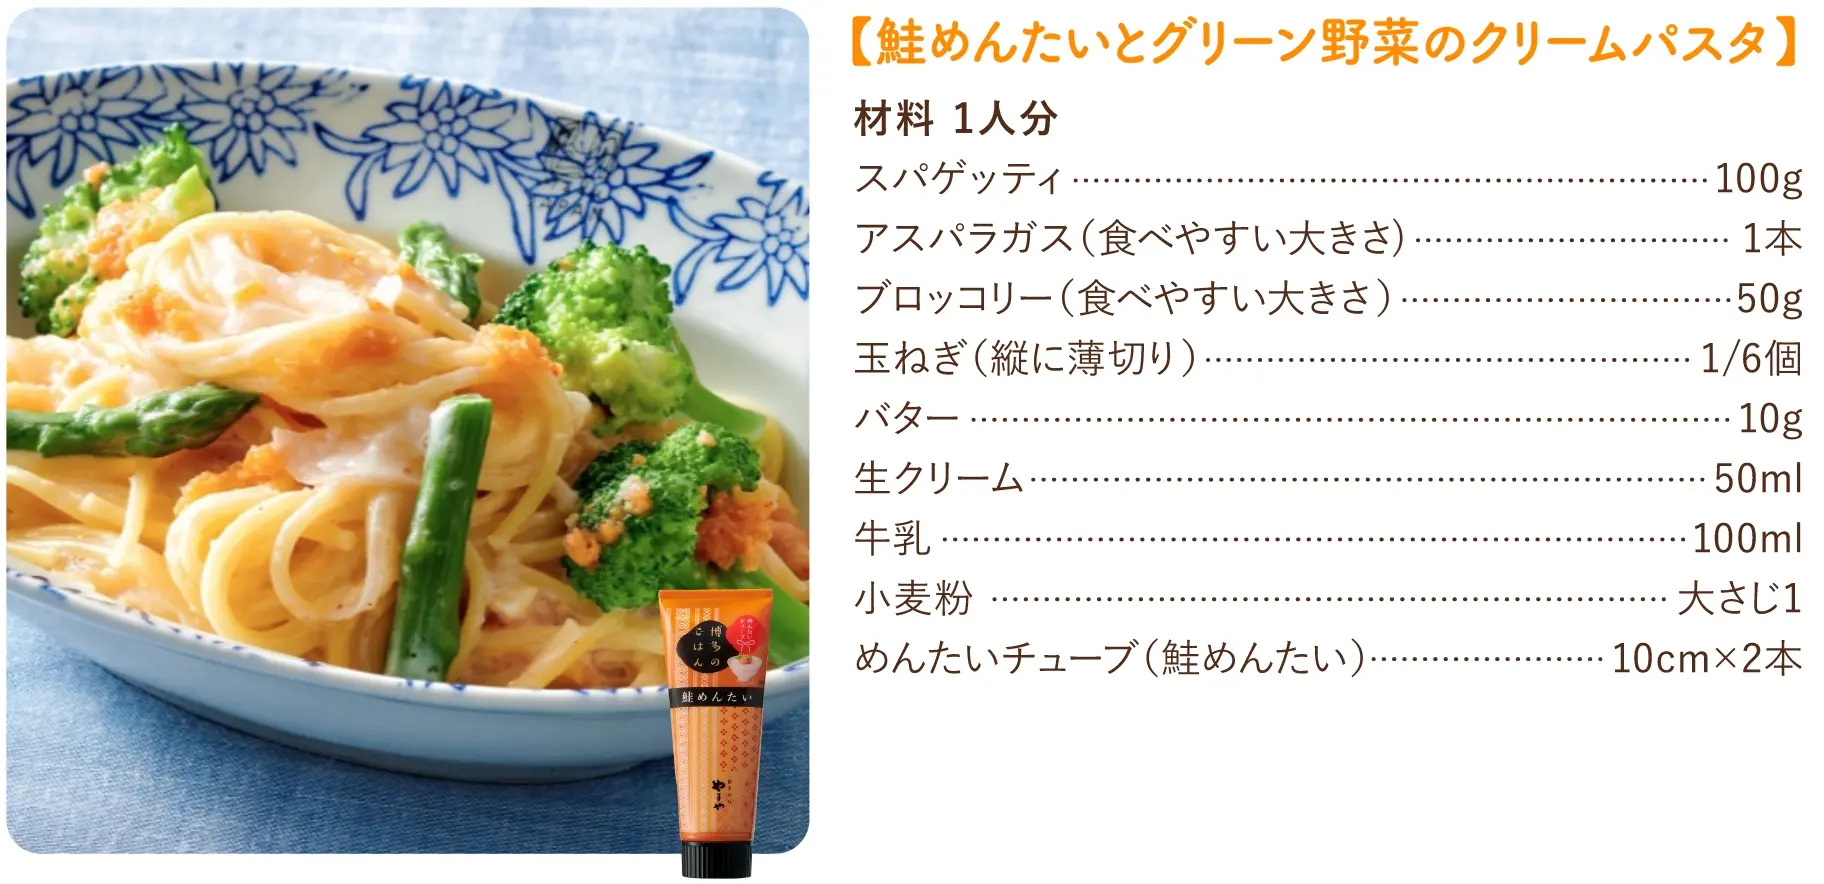 【鮭めんたいとグリーン野菜のクリームパスタ】のレシピ